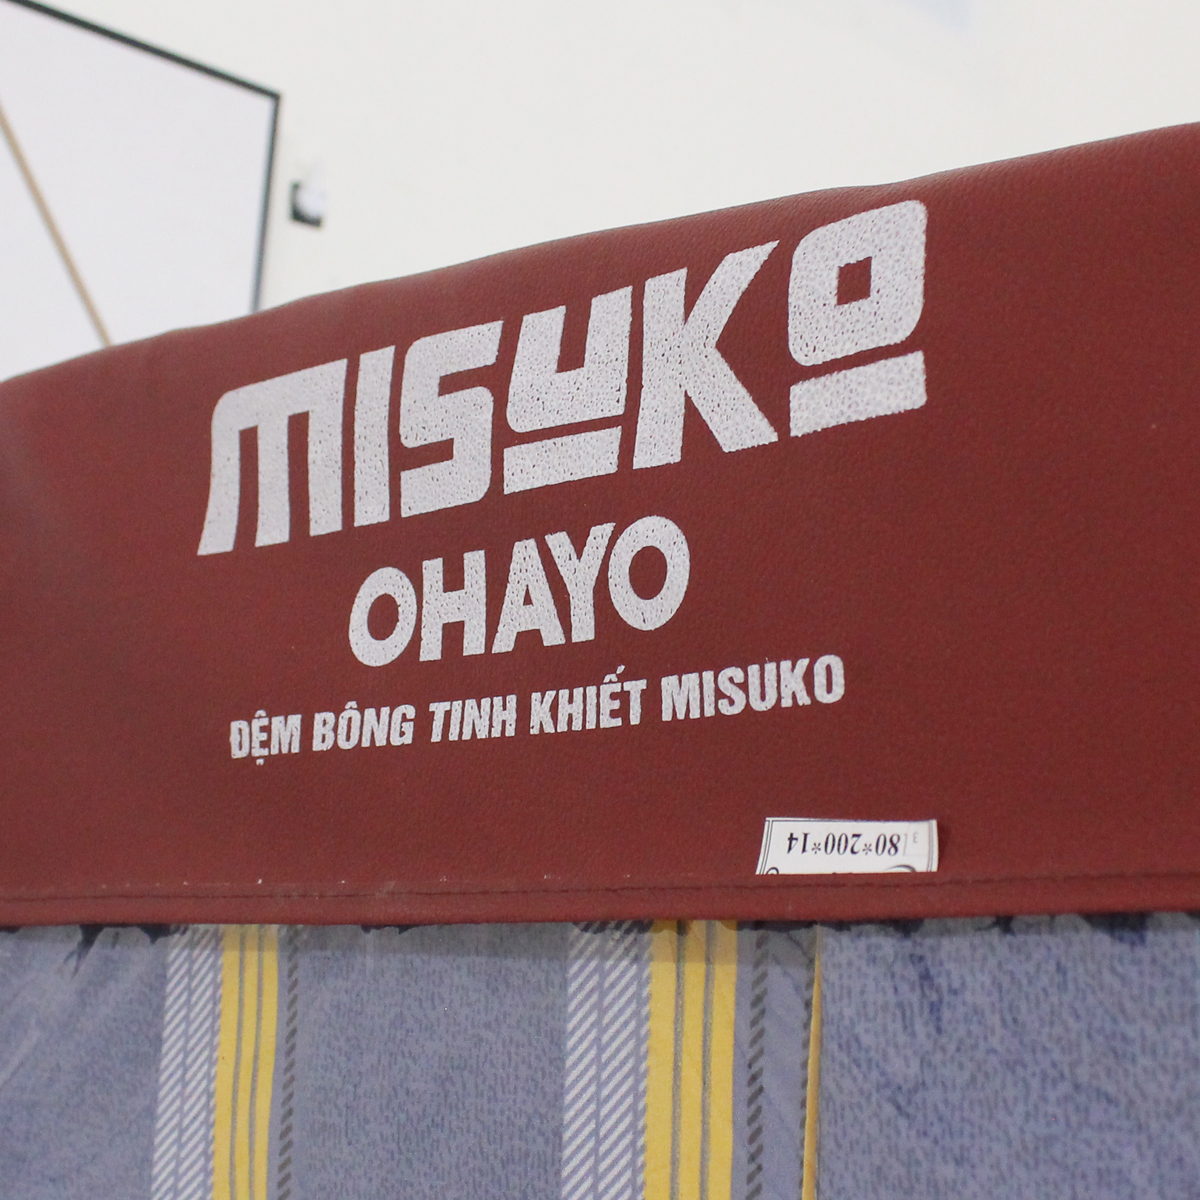 Đệm bông ép Nhật Bản Misuko Super Ohayo (lõi bông tinh khiết)